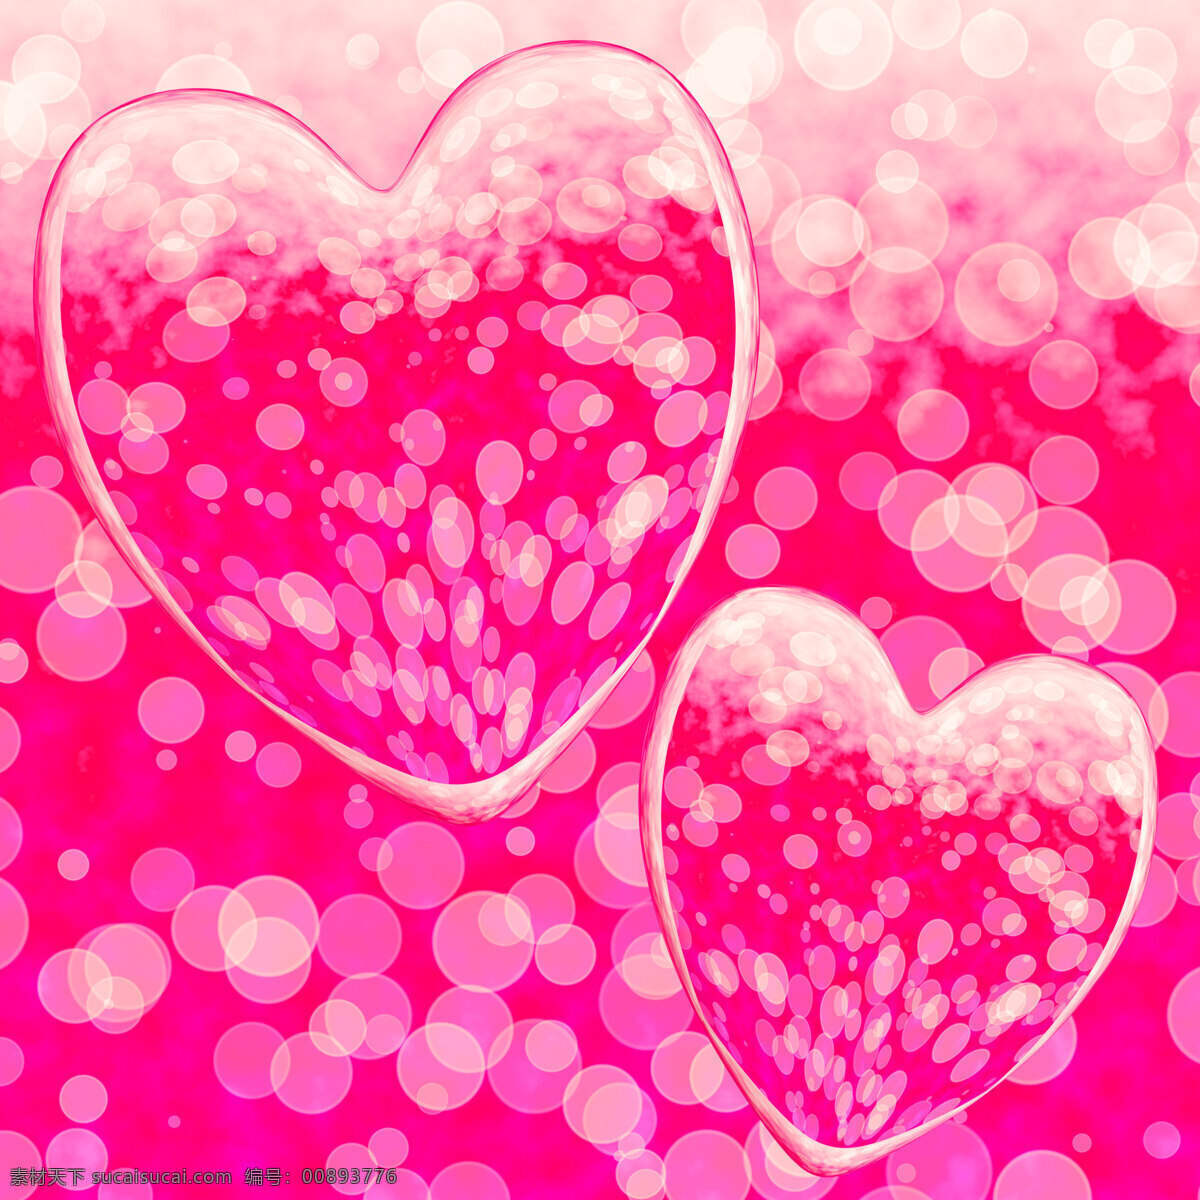 粉红色 心形 背景 虚化 显示 爱情 浪漫 情怀 文化艺术